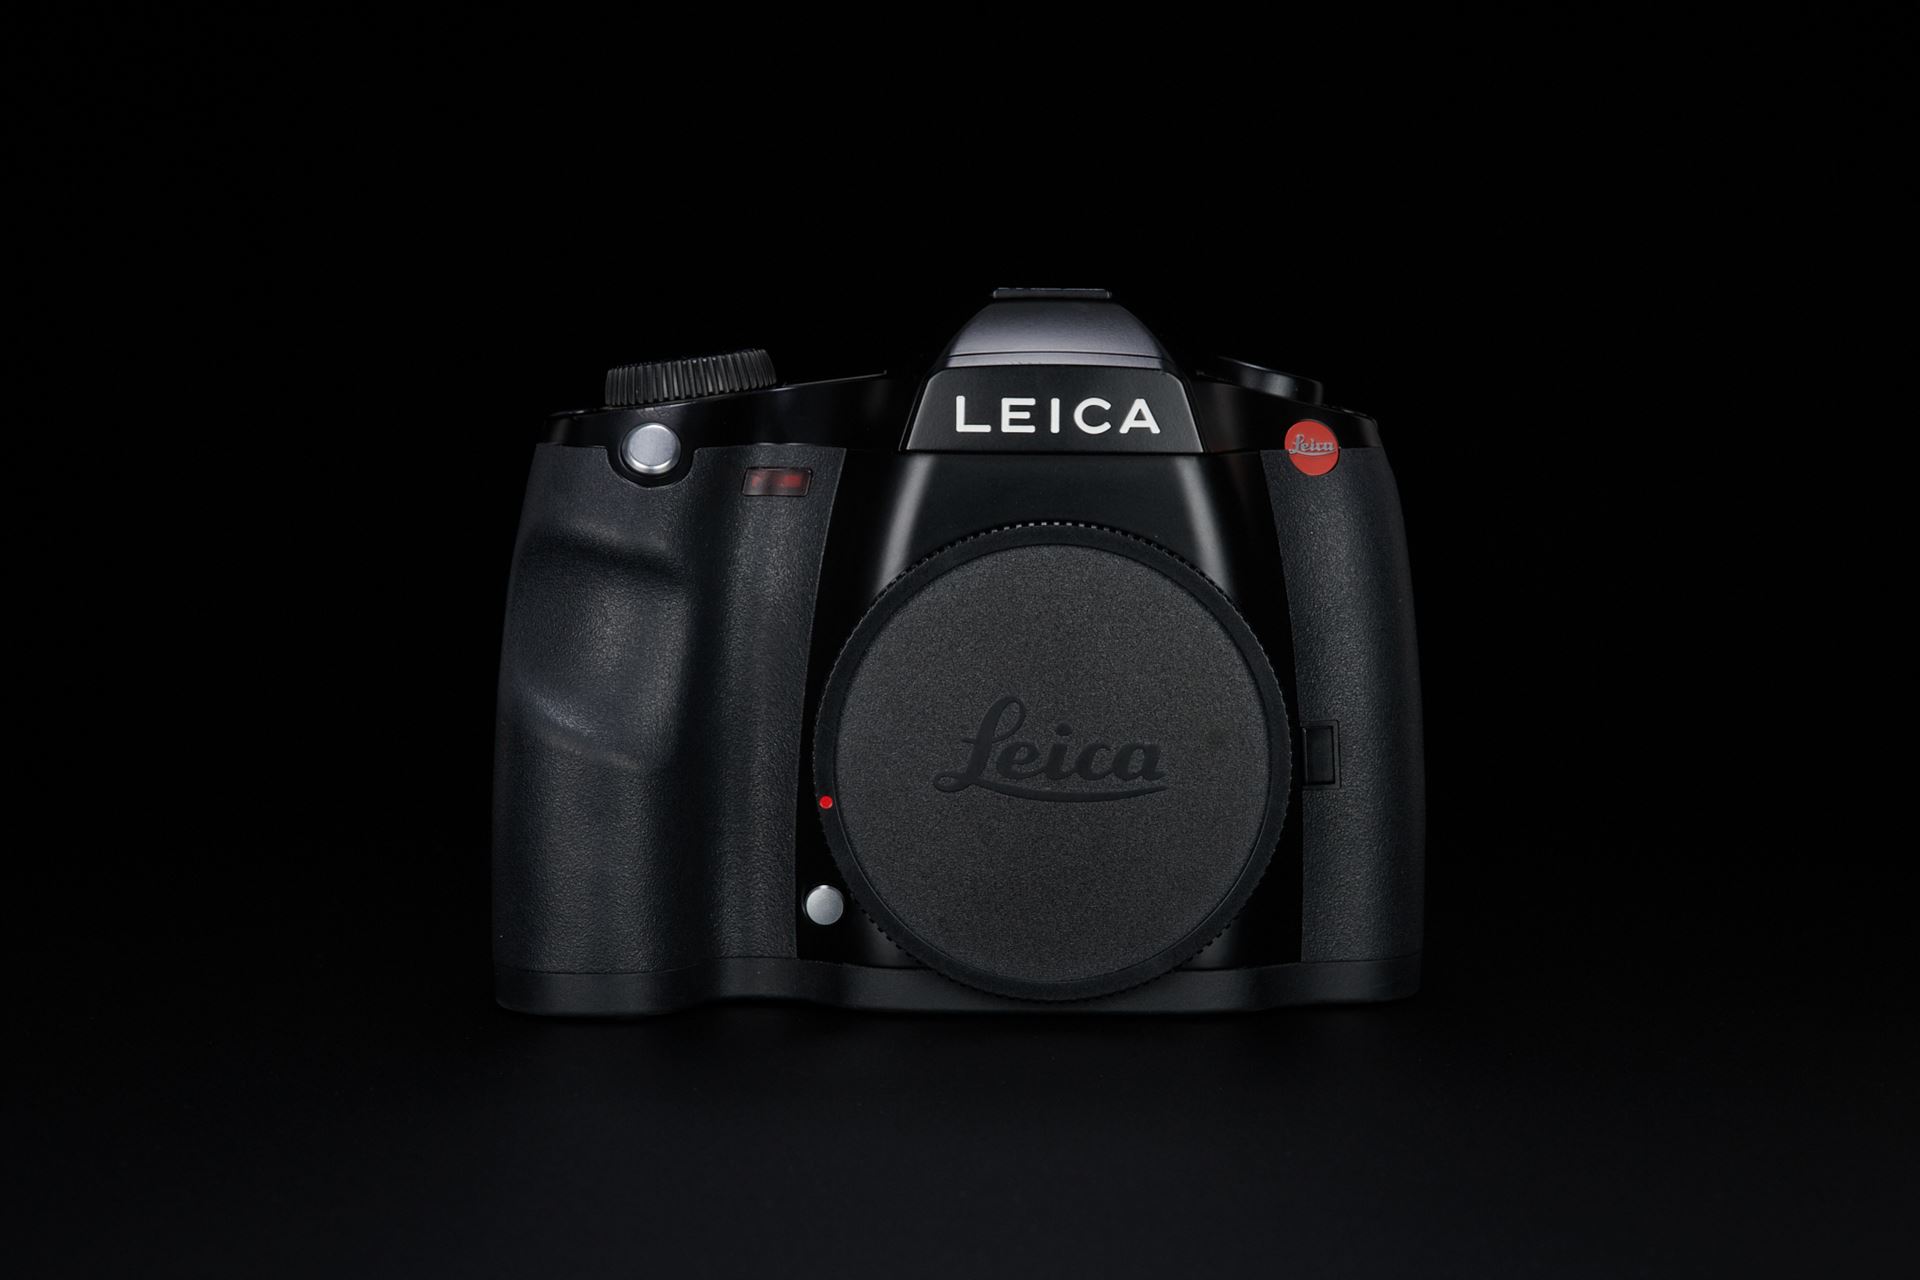 Picture of Leica S (Typ 006) w/ Leica Elmarit-S 30mm f/2.8 Asph. CS, Leica Summicron-S 100mm f/2 Asph., and Leica APO-Elmar-S 180mm f/3.5 CS